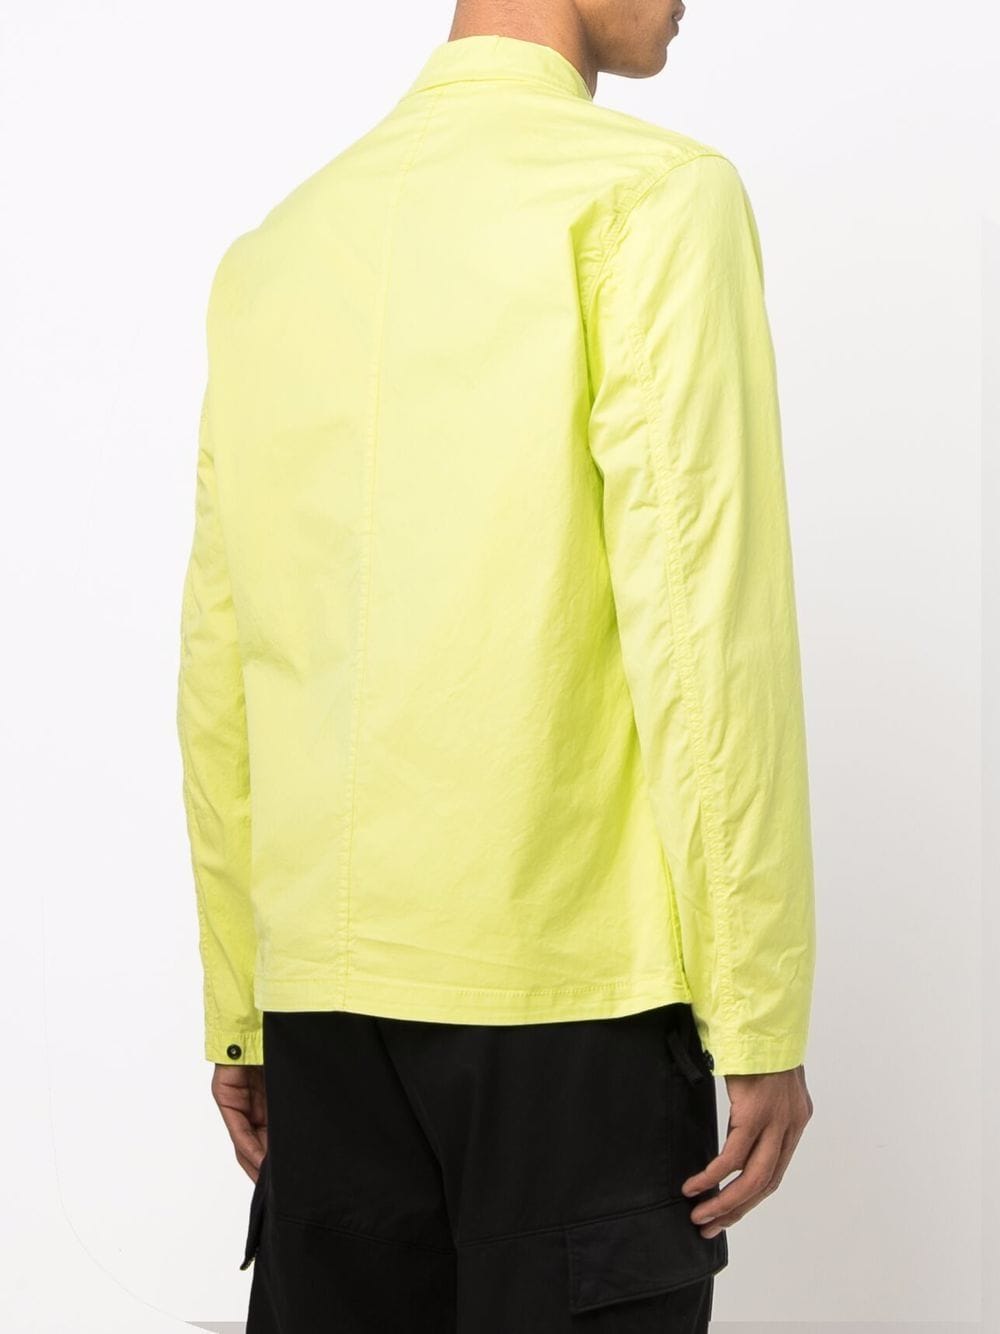 STONE ISLAND Overshirt Jacket Yellow - MAISONDEFASHION.COM